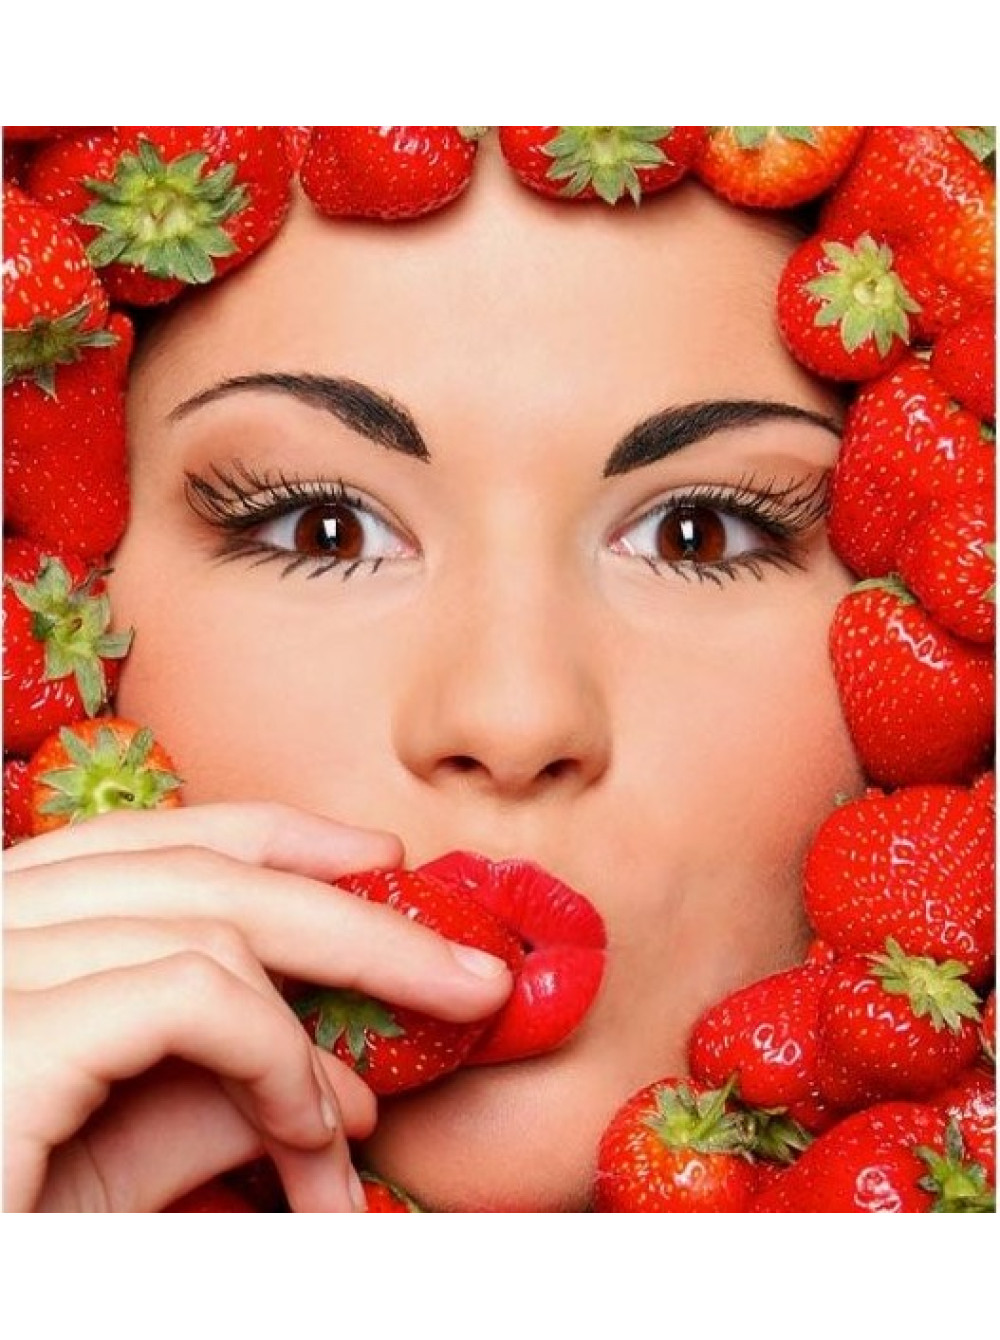 Девушка с клубникой. Фотосессия с фруктами. Красивые девушки с фруктами. Ягода с лицом.